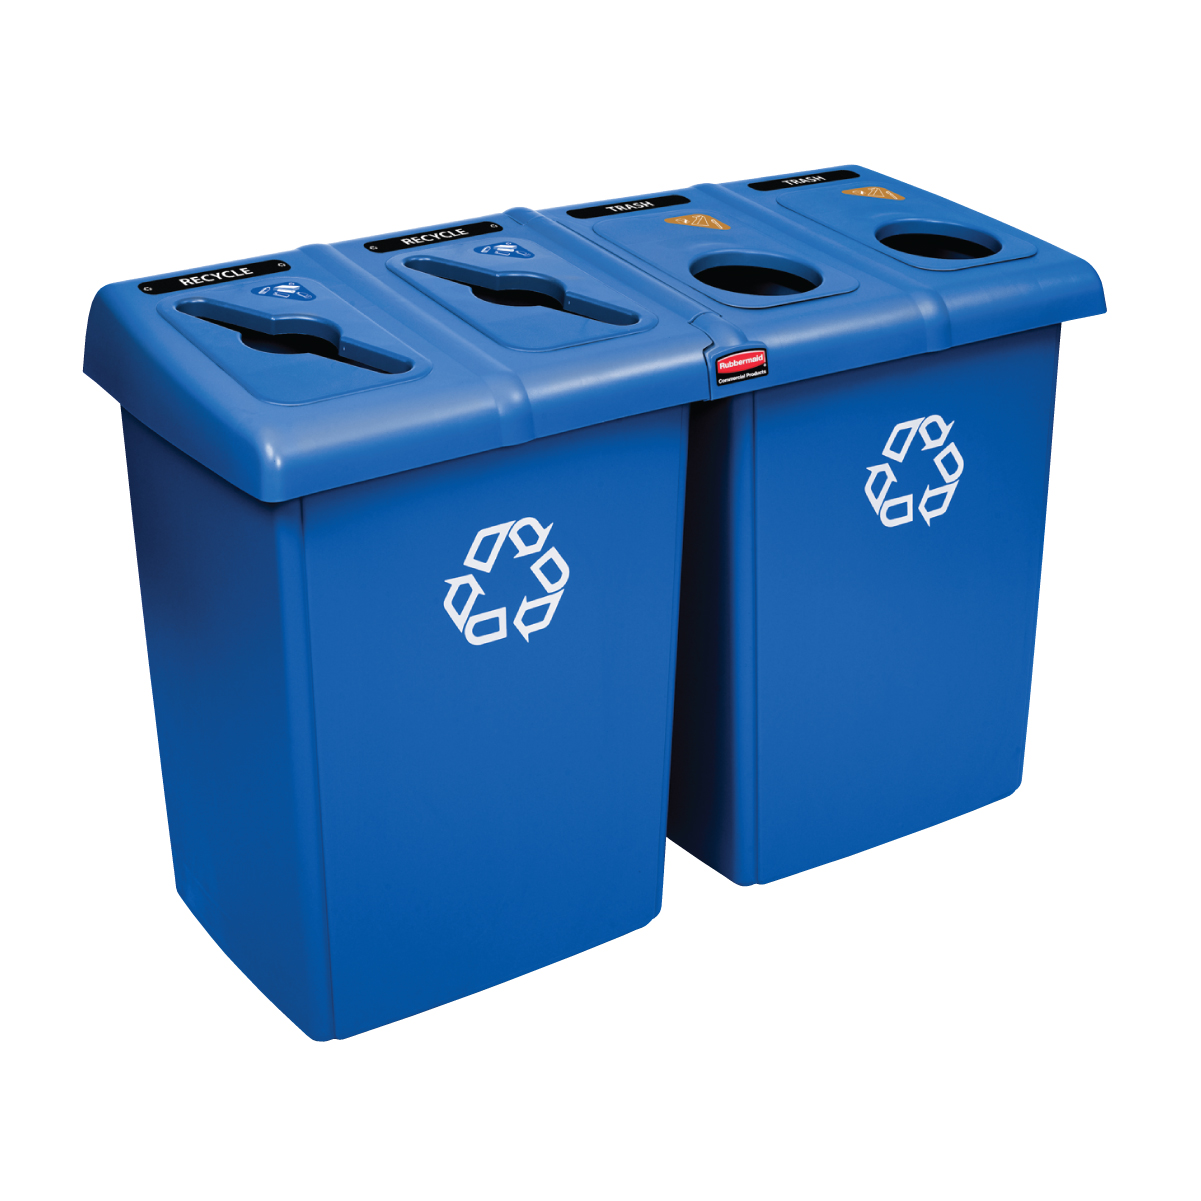 ถังขยะรีไซเคิล แบบ 4 ช่อง สีน้ำเงิน Glutton® Recycling Station